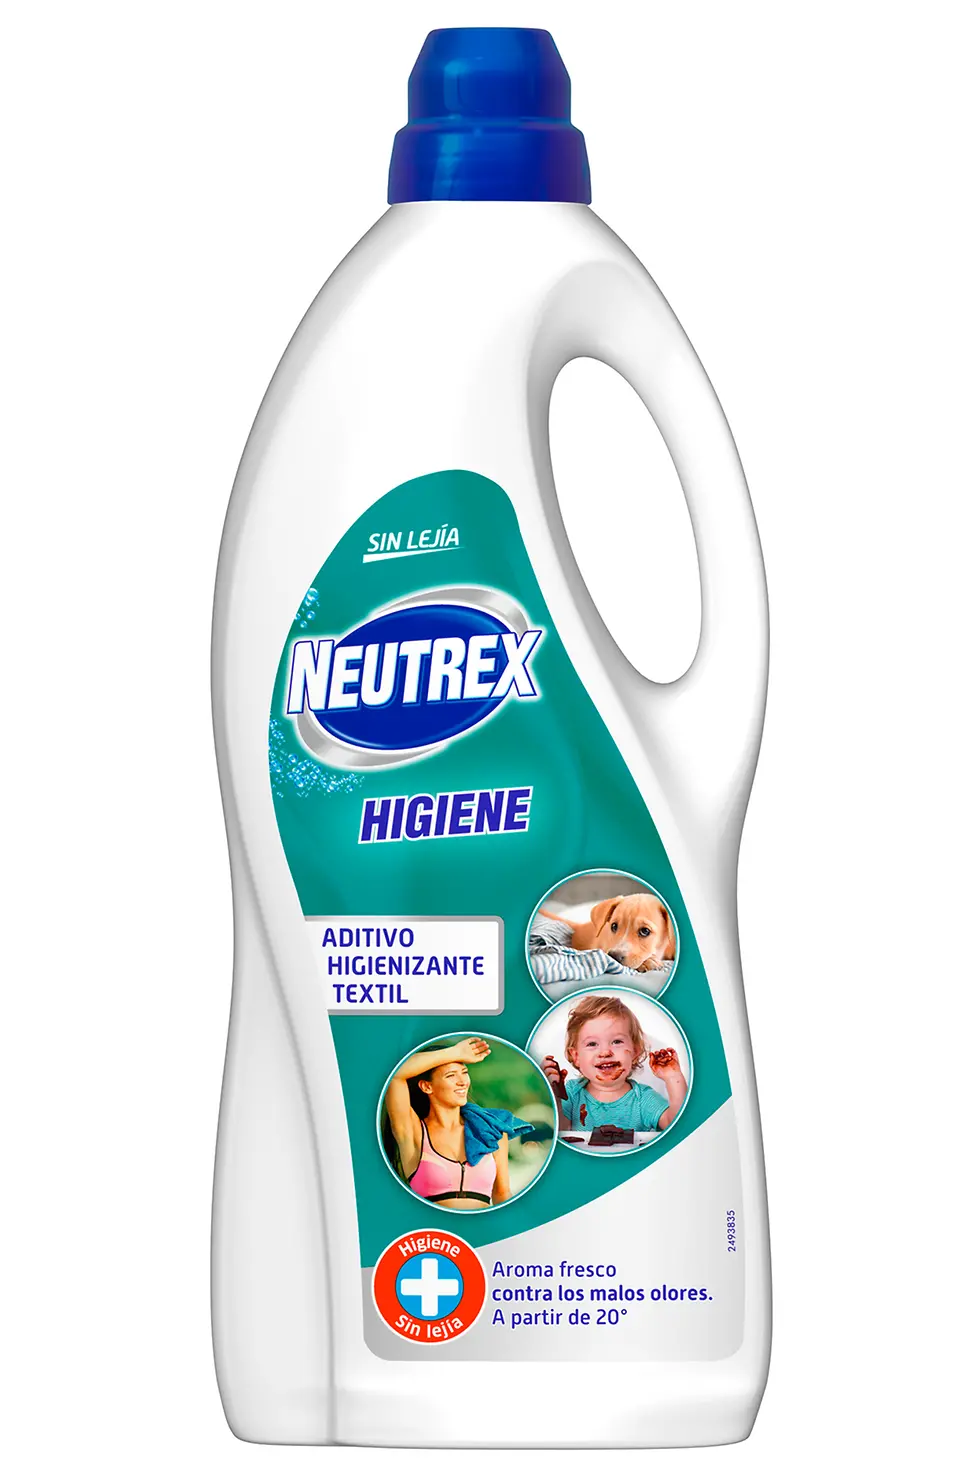 Tenn & Neutrex lanzan su nueva gama Higiene sin lejía ideal para las  familias